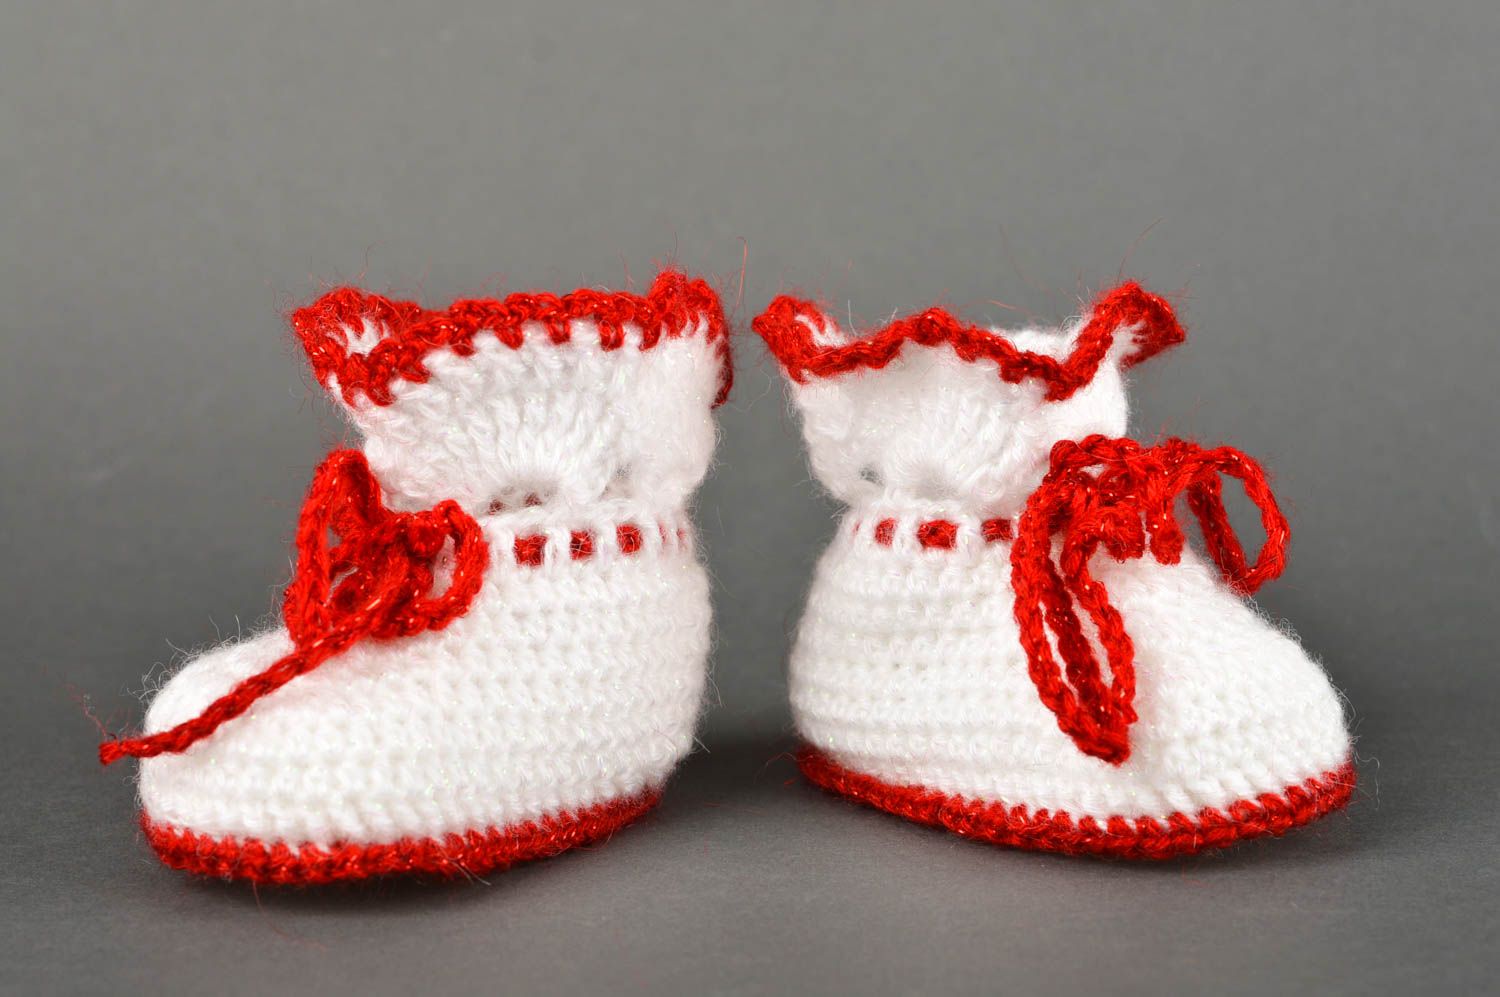 Chaussons blancs faits main Chaussures bébé tricotés mignons Vêtement bébé photo 2